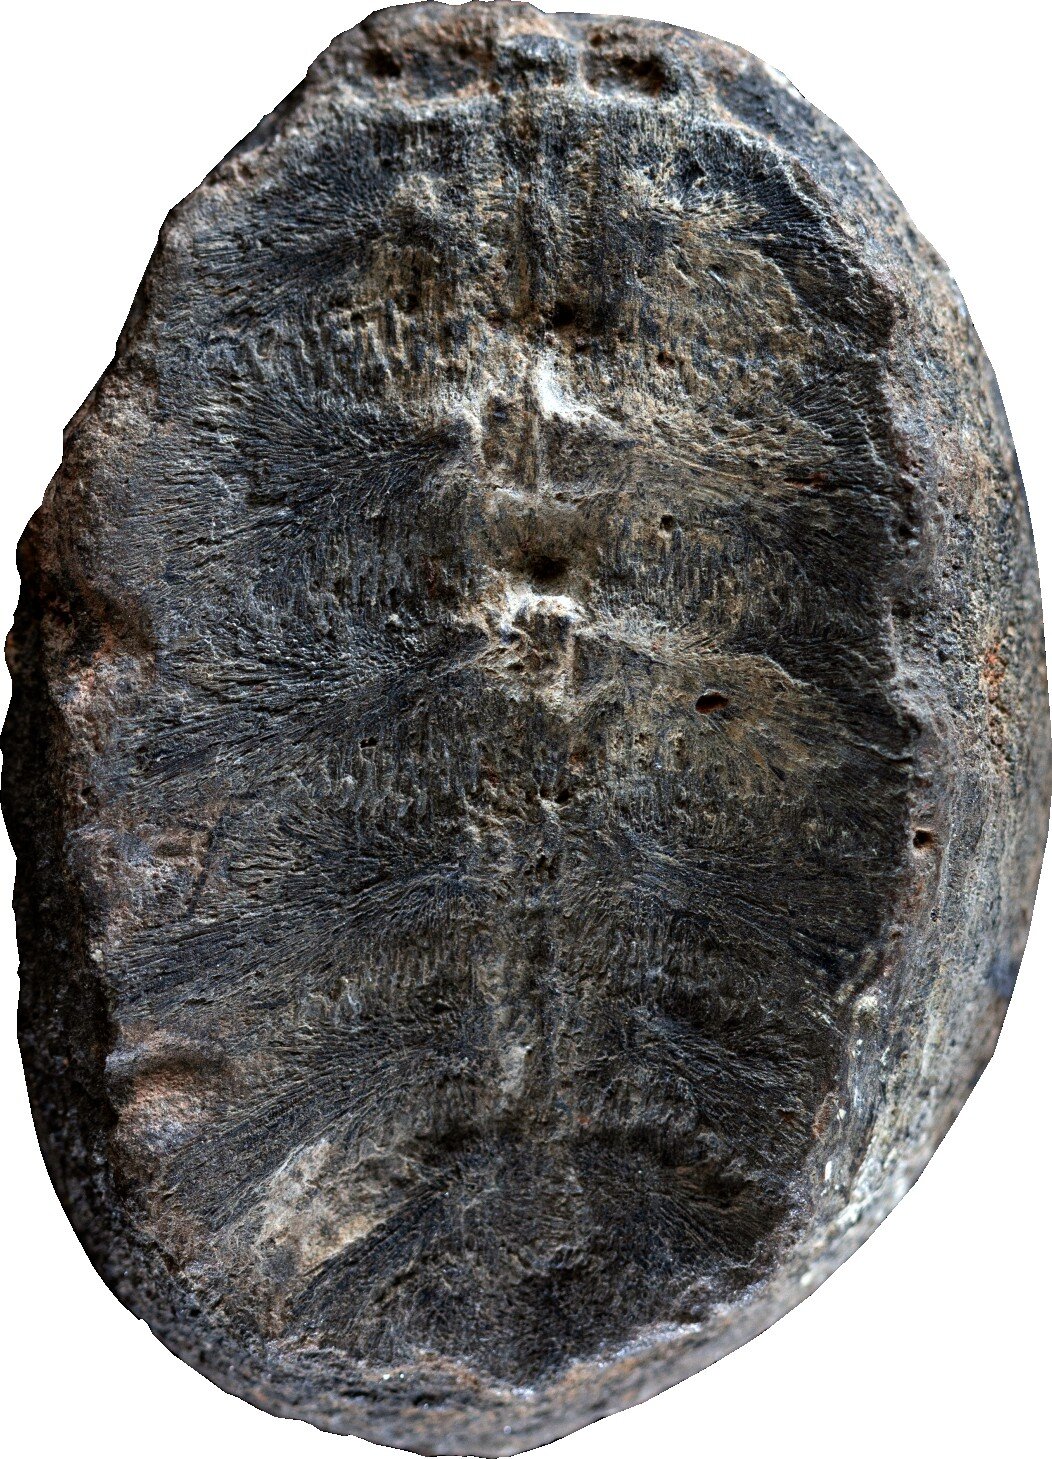 事实证明，这个植物化石实际上是一个小海龟化石